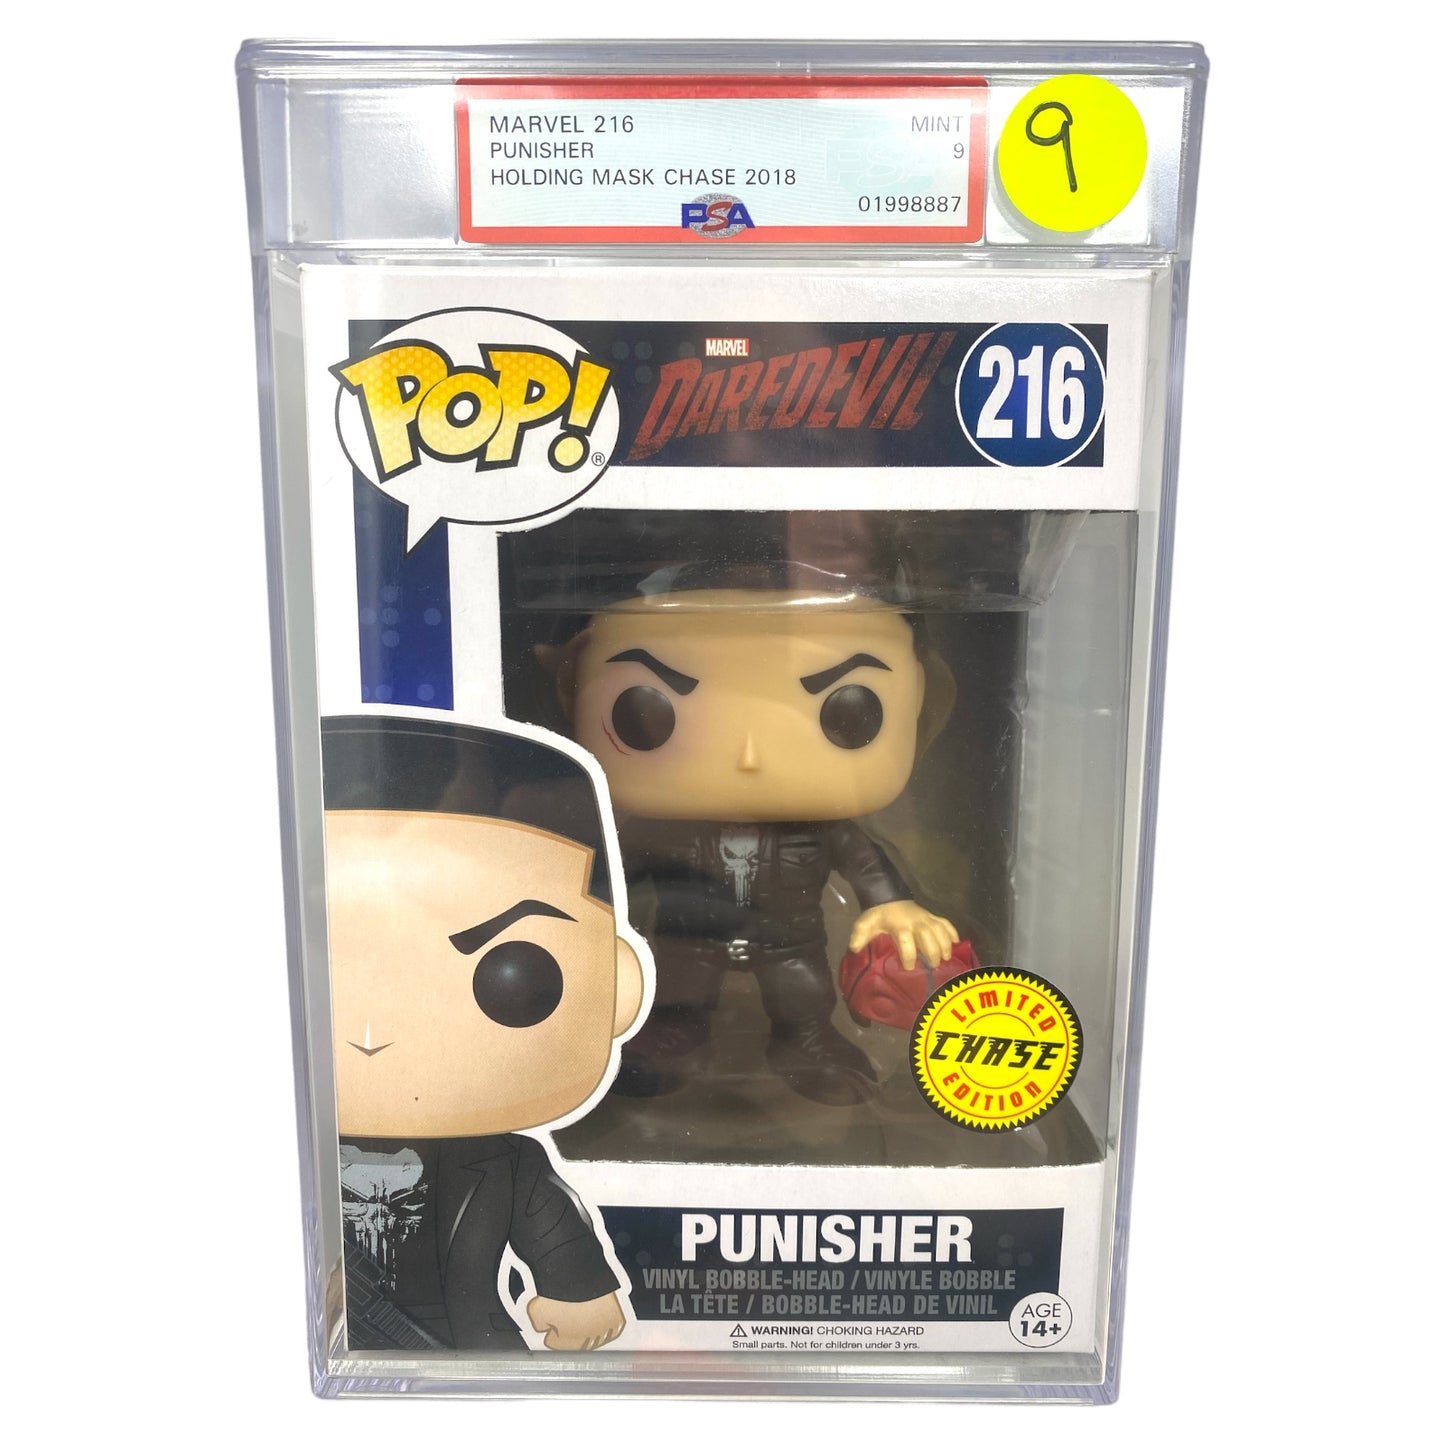 PSA Grade 9 2018 Punisher 216 Holding Mask Chase